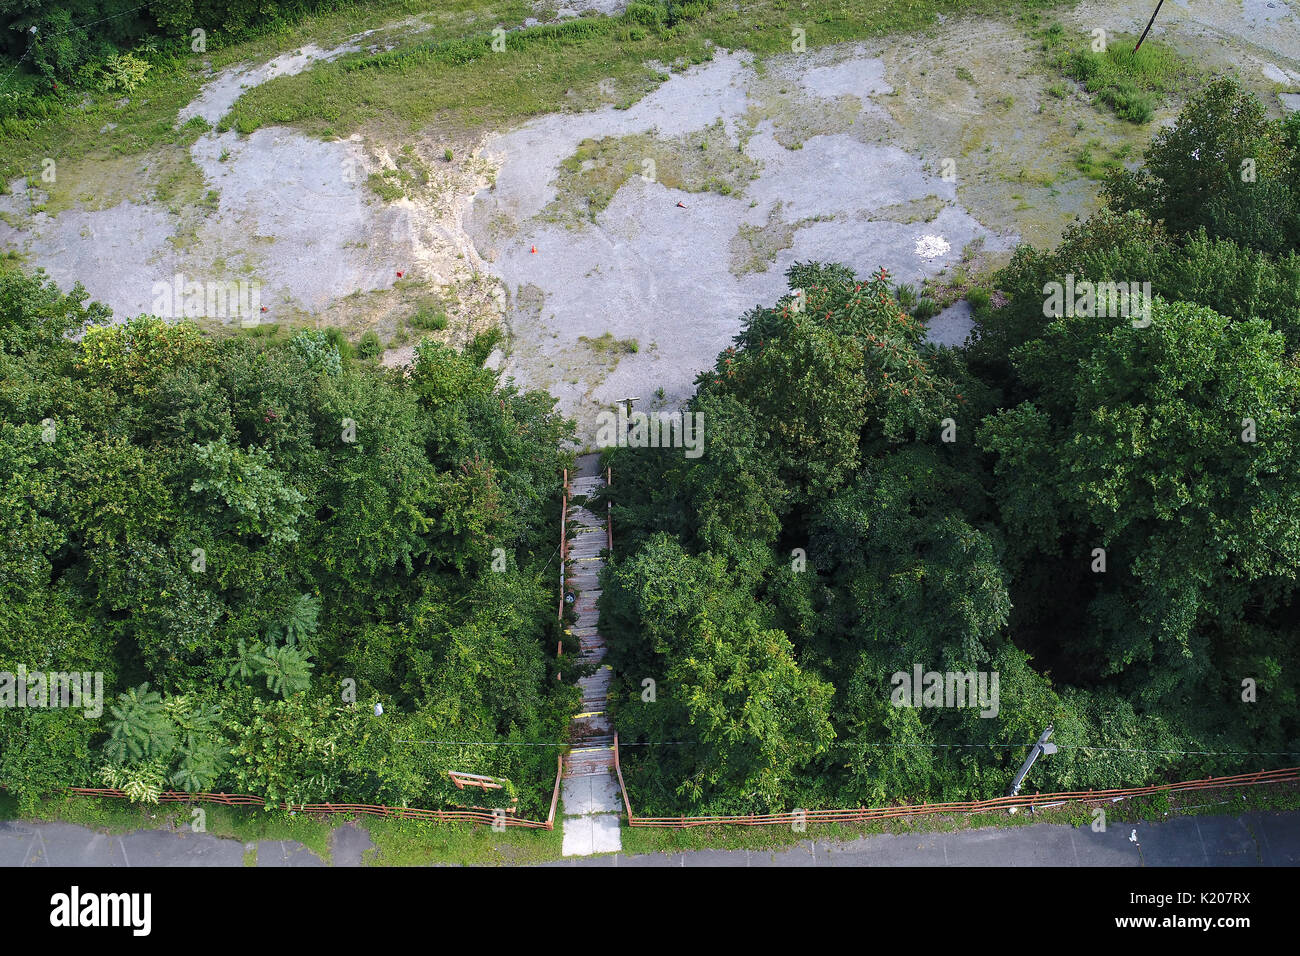 Luftbild des Alten aufgeschlüsselt Treppe vom ungenutzten alten Parkplatz Stockfoto